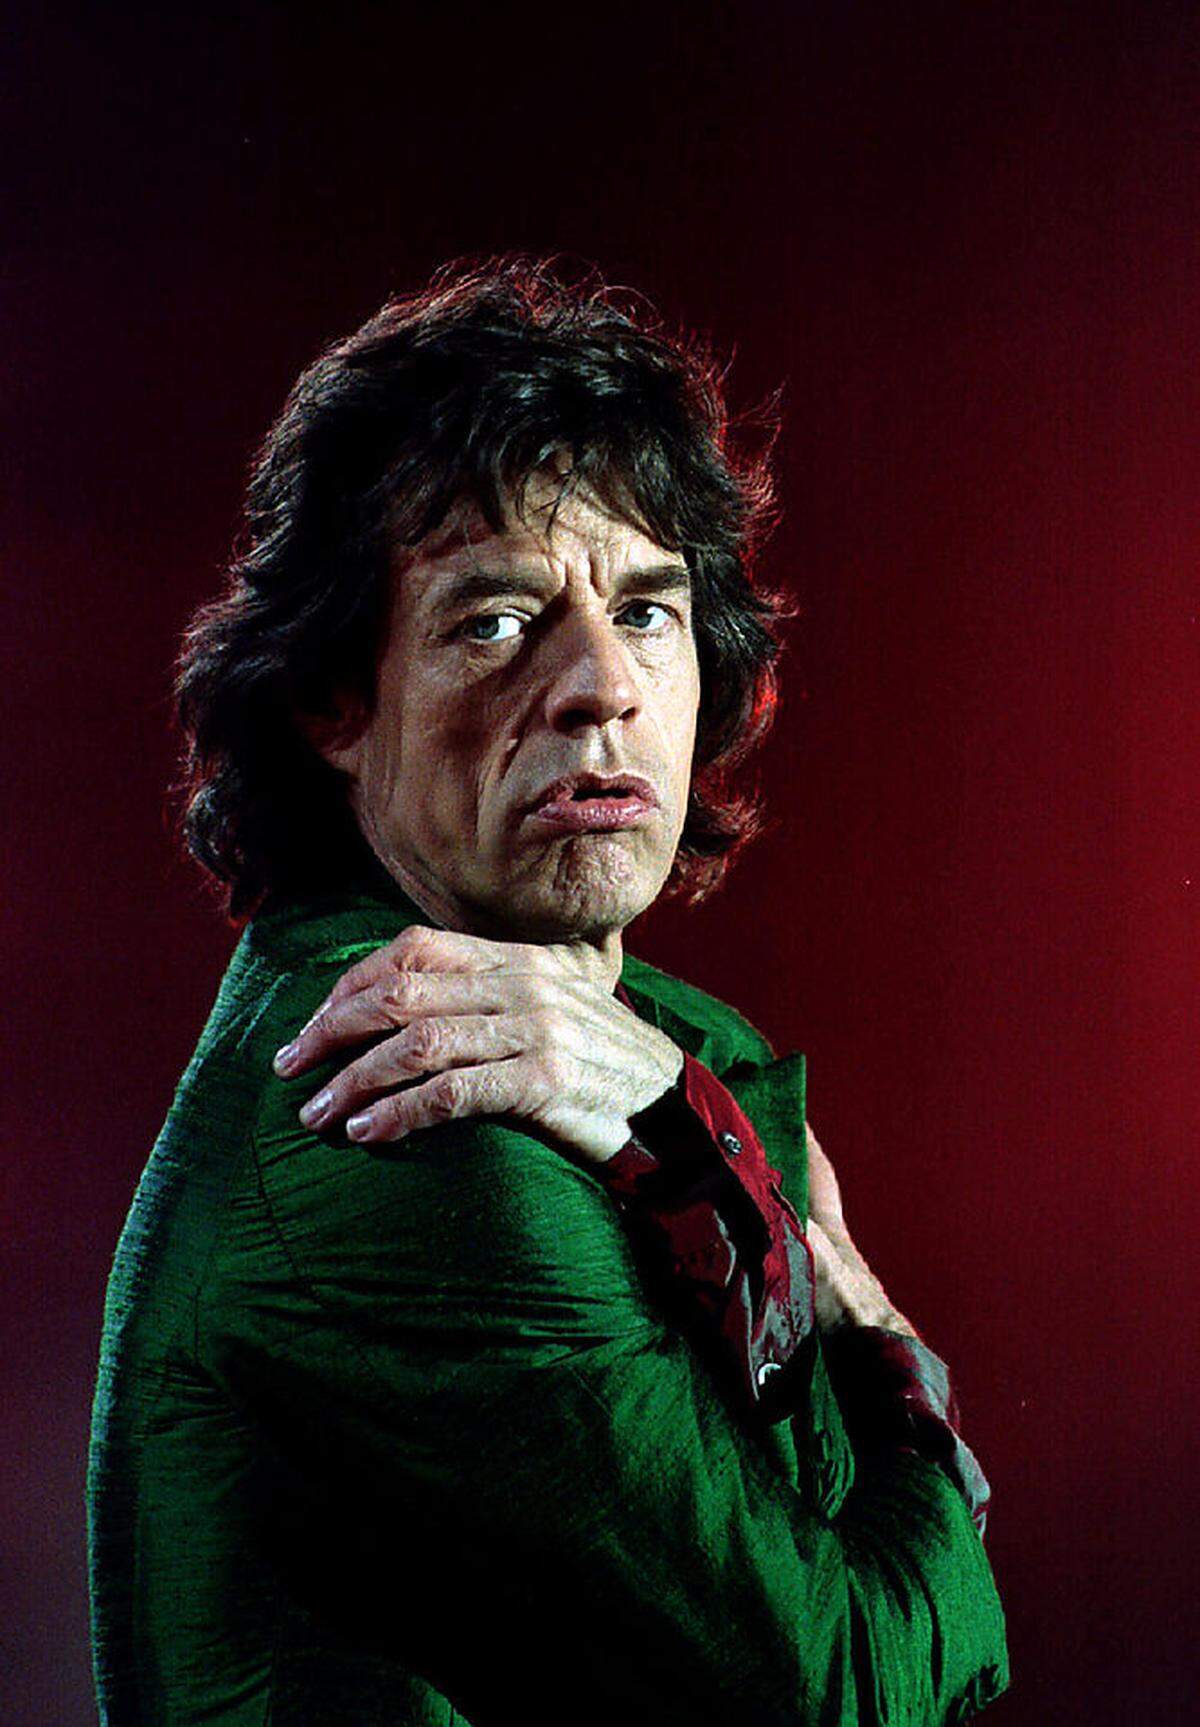 Rockmusiker und "Rolling Stones"-Frontman Mick Jagger hat acht Kinder mit fünf Frauen - zuletzt wurde der 73-Jährige im Dezember 2016 Vater.